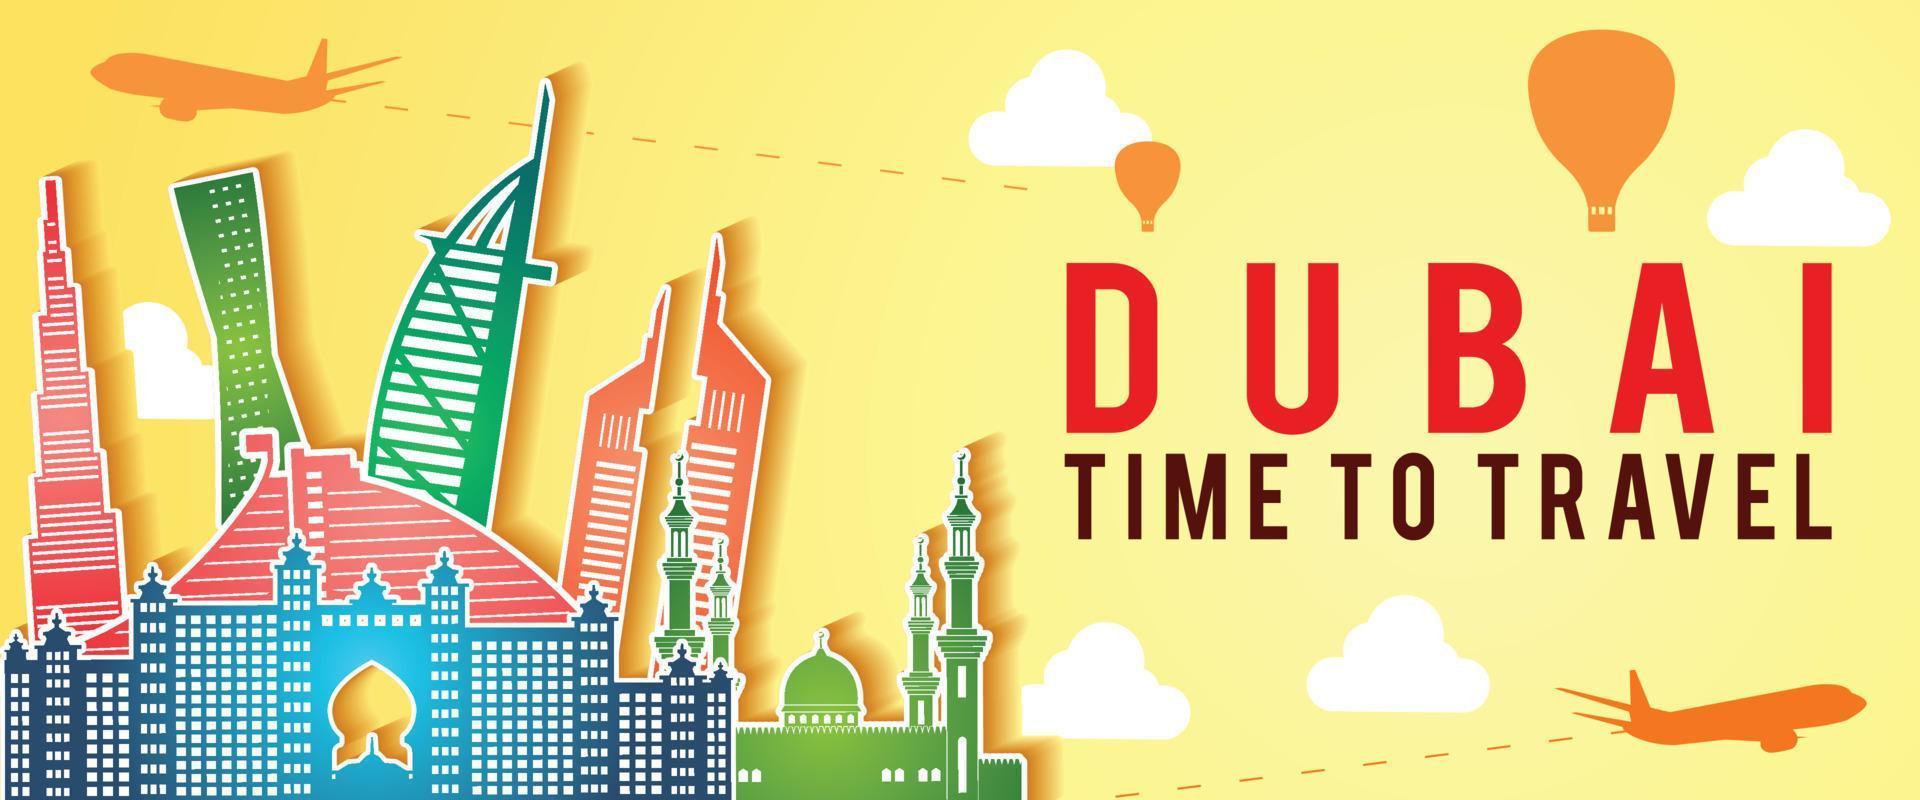 bandeira amarela da silhueta do famoso ponto de referência de Dubai, estilo colorido, avião e balão voando com nuvens vetor